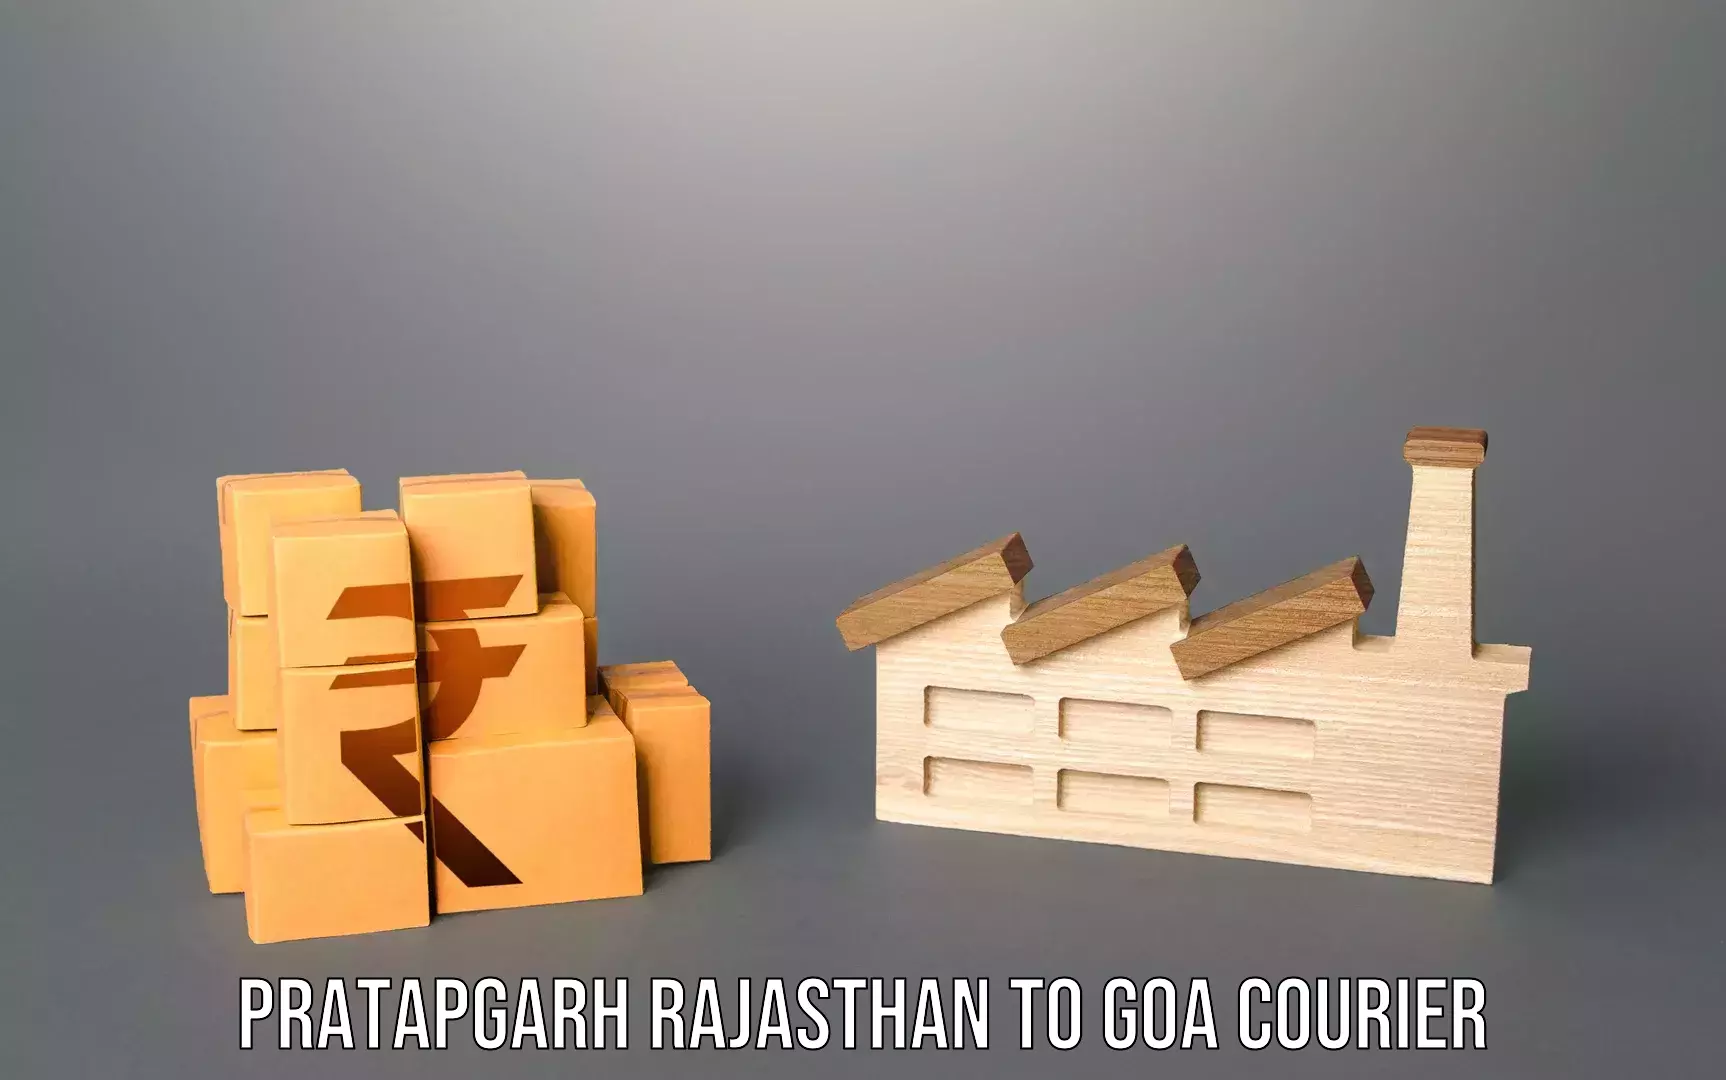 Baggage transport innovation Pratapgarh Rajasthan to NIT Goa